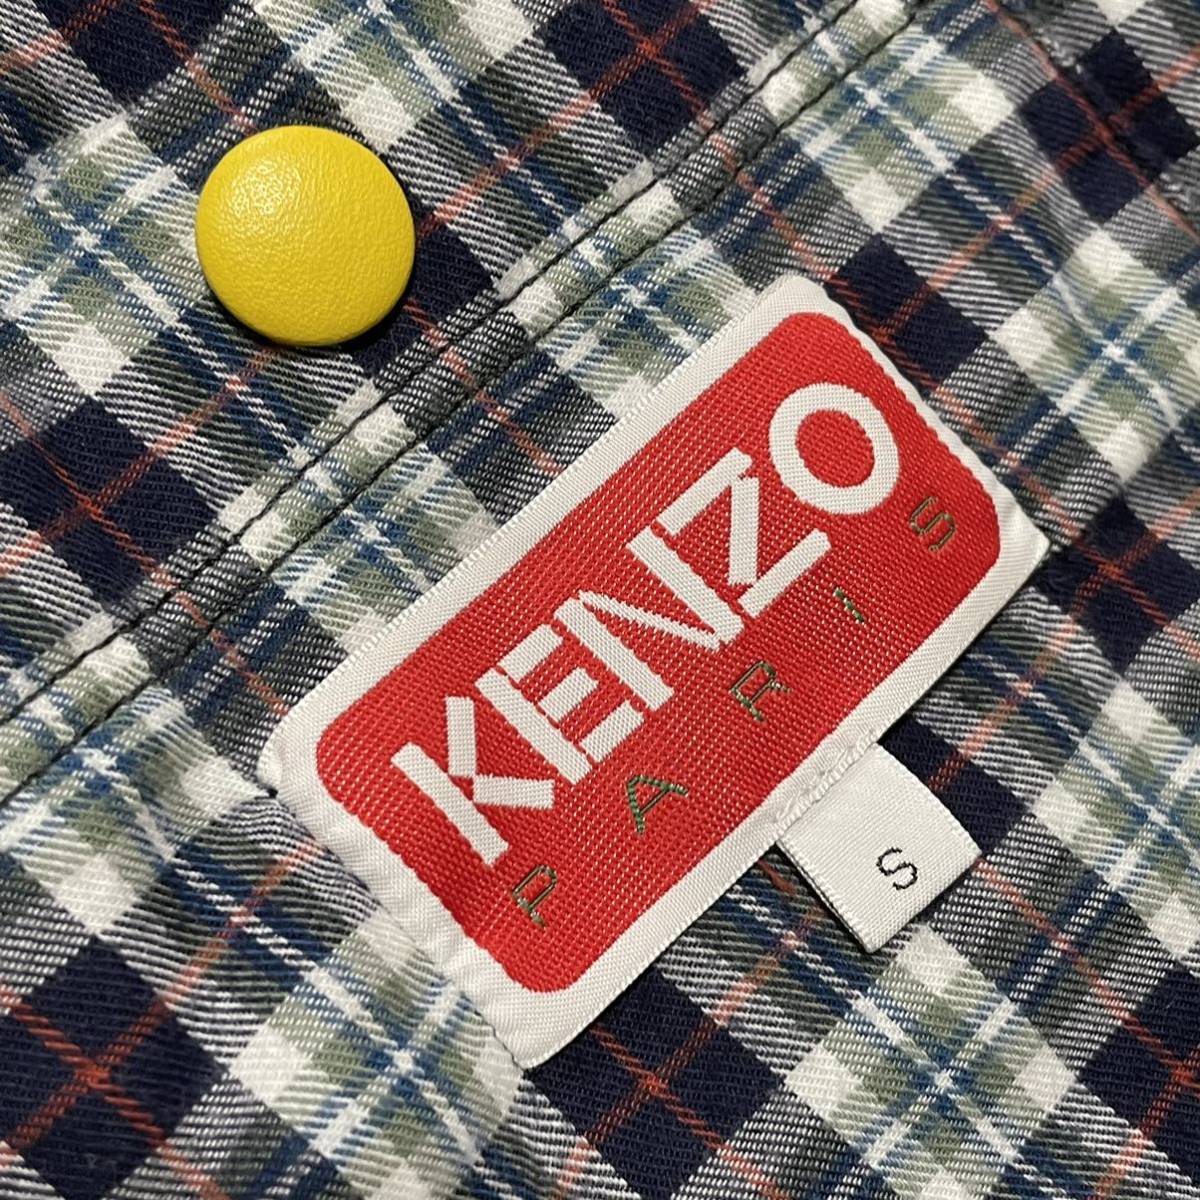  стандартный товар прекрасный товар KENZO Kenzo .Tiger балка City жакет куртка внешний tops рукав кожа S